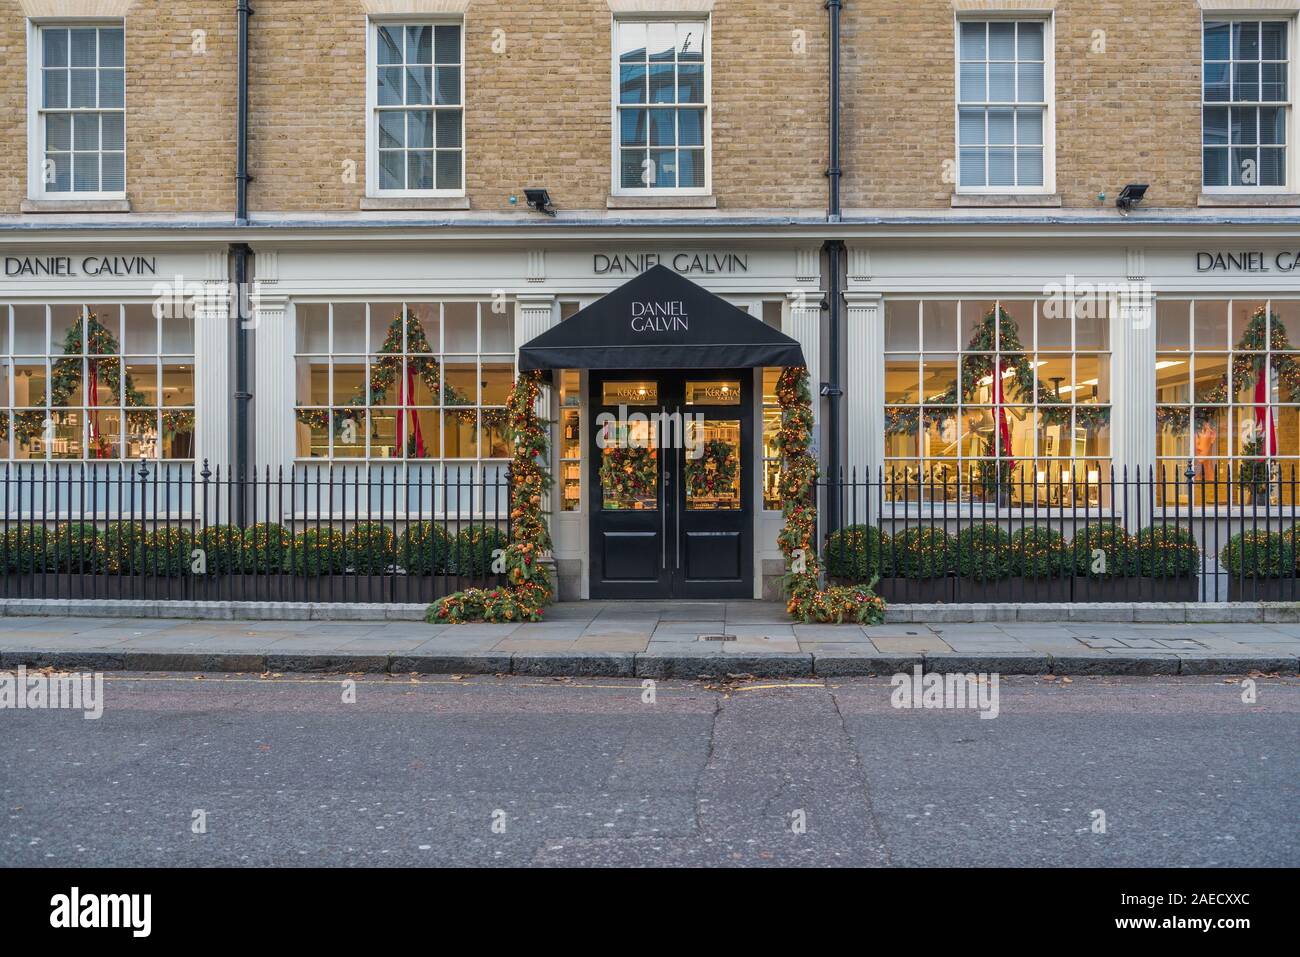 Daniel Galvin, flagsjhip salon de coiffure dans George Street, Marylebone, London, England, UK. Windows et l'entrée décorée pour Noël clebrations. Banque D'Images